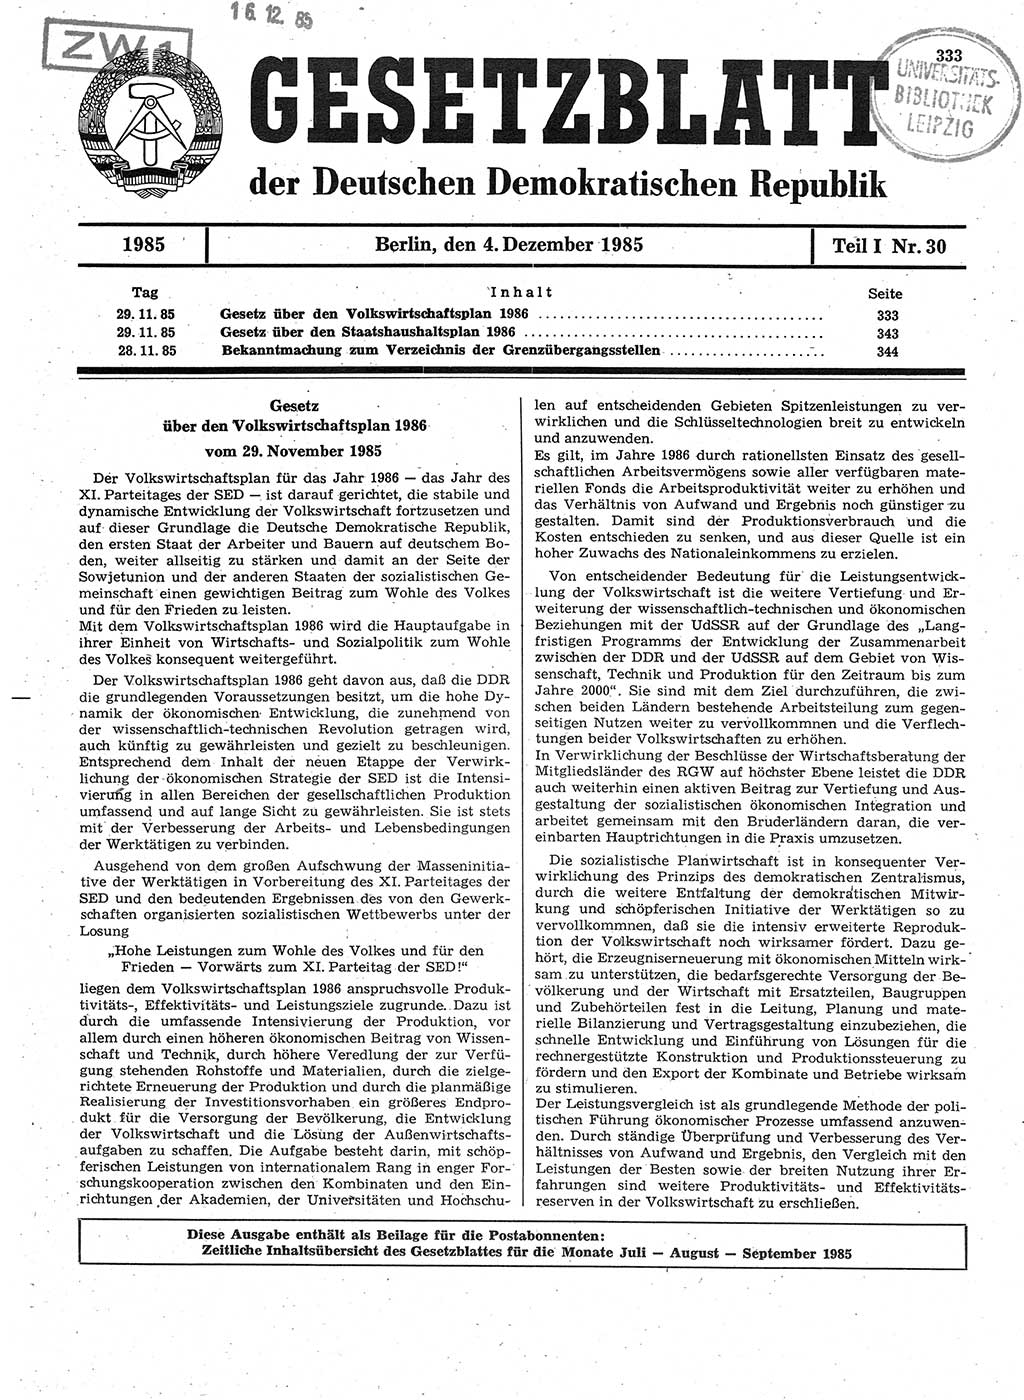 Gesetzblatt (GBl.) der Deutschen Demokratischen Republik (DDR) Teil Ⅰ 1985, Seite 333 (GBl. DDR Ⅰ 1985, S. 333)